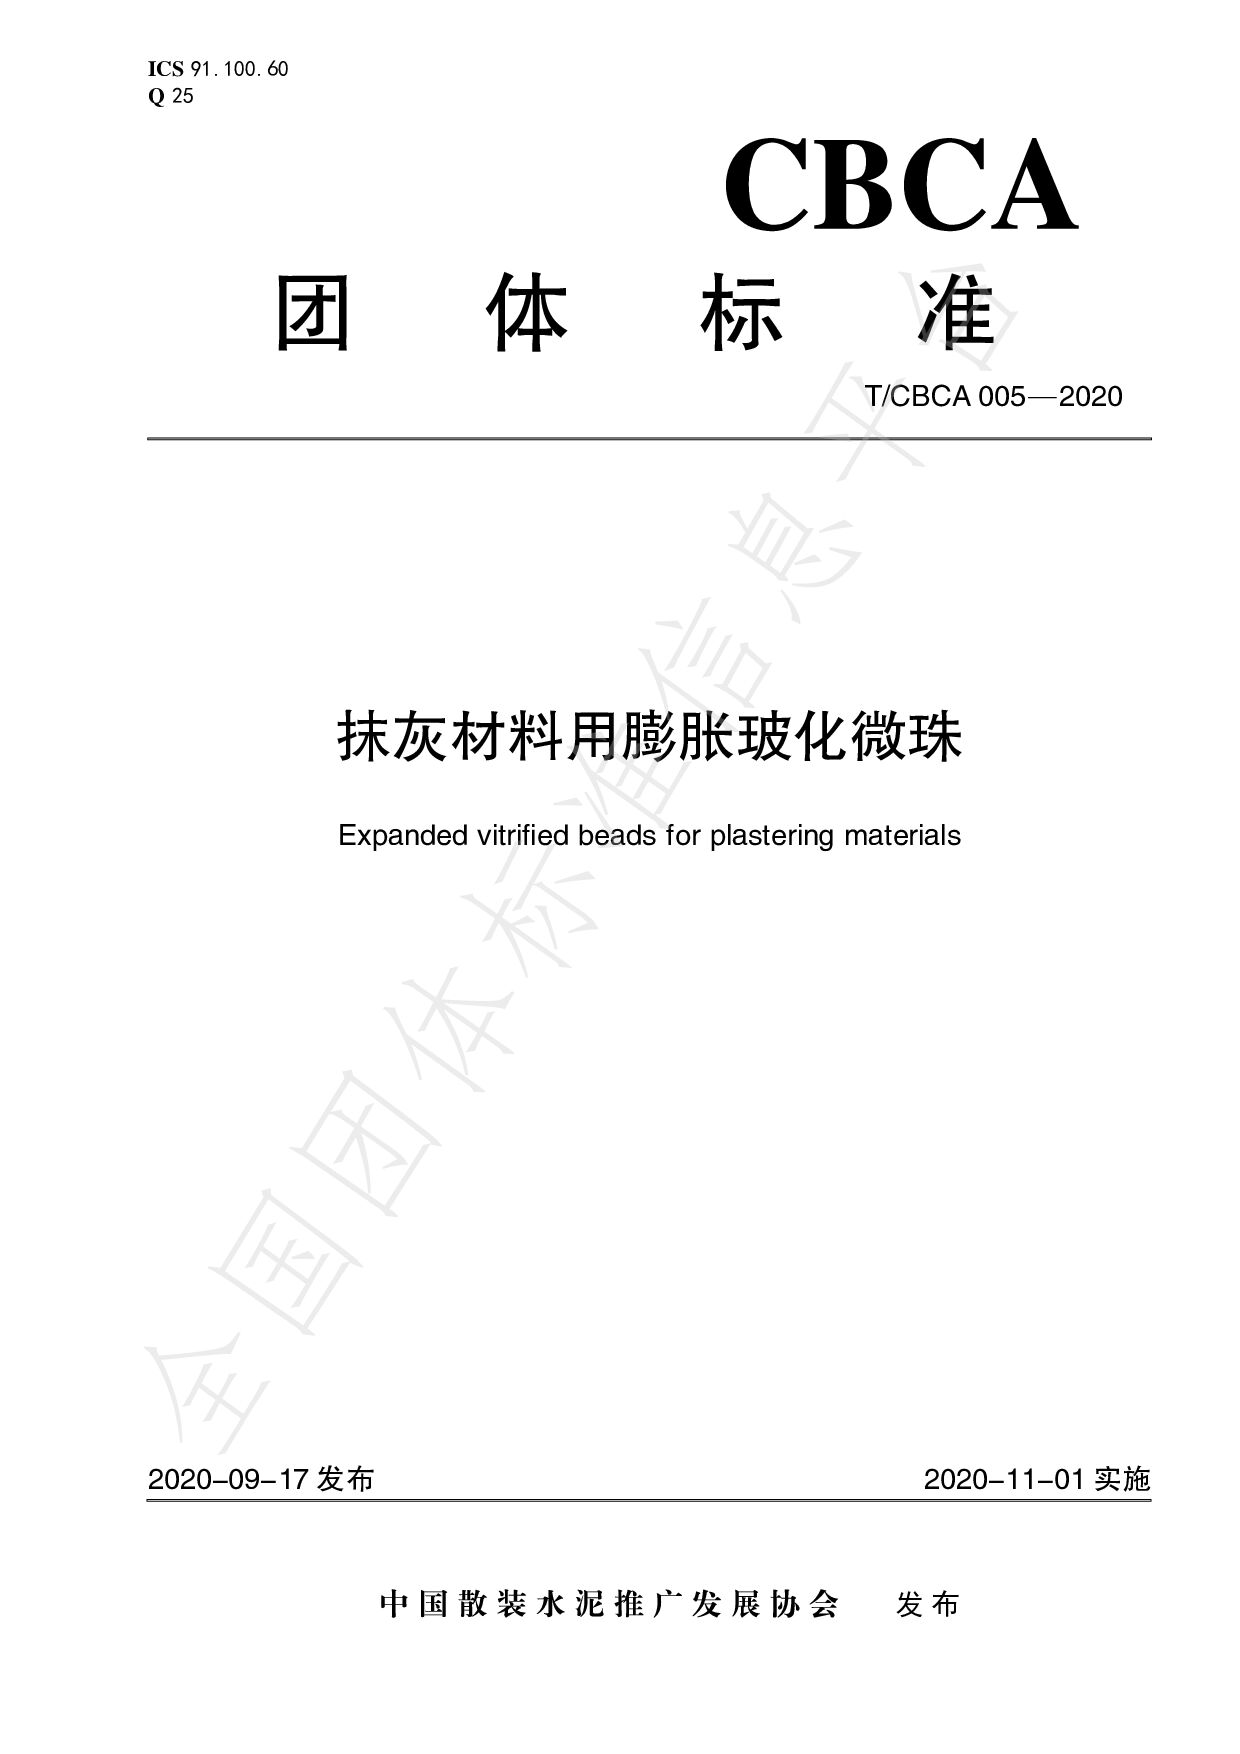 T/CBCA 005-2020封面图